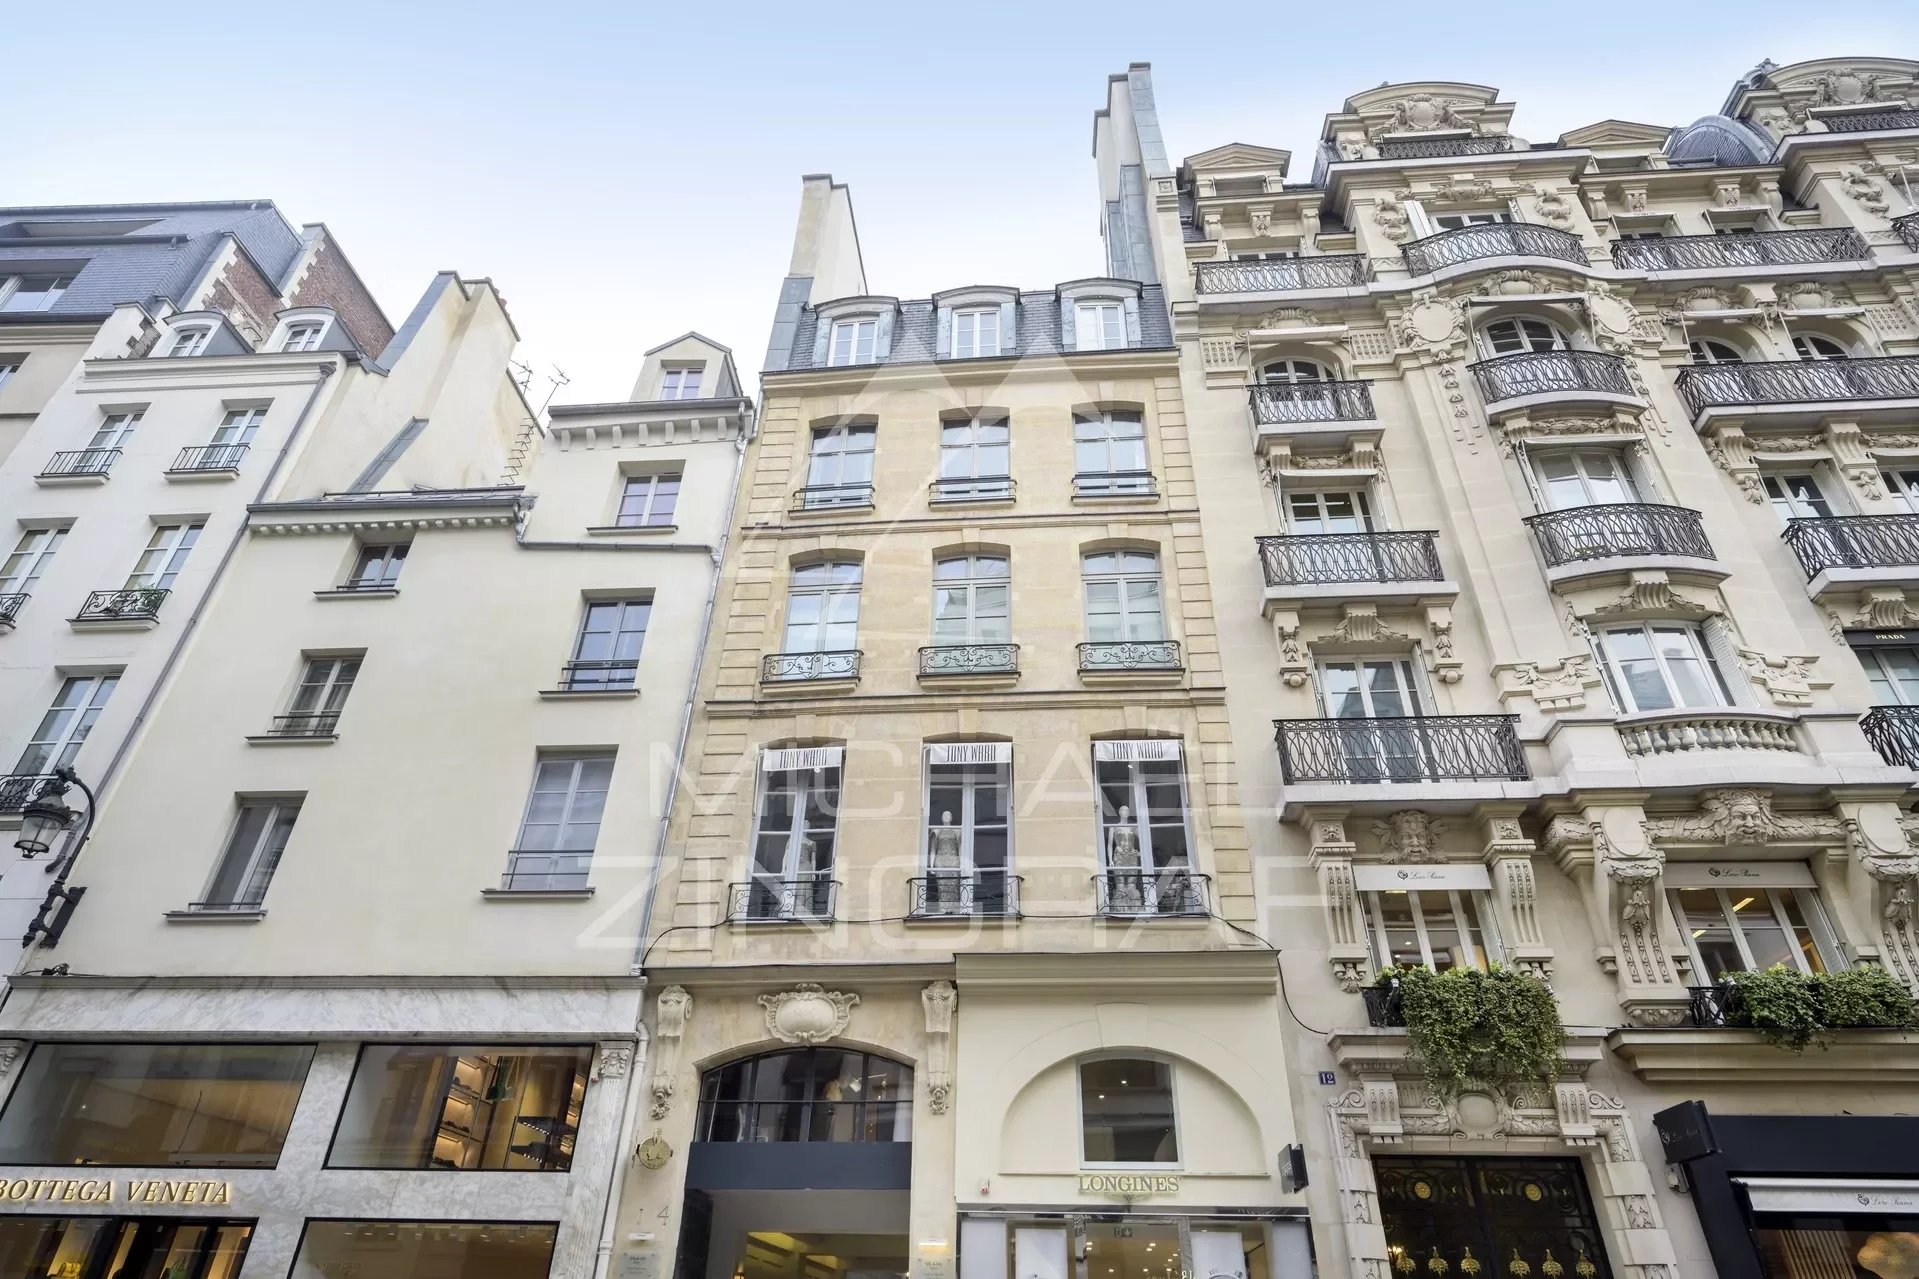 Vente appartement Paris 8ème - 2 chambres - Rue du faubourg Saint Honoré